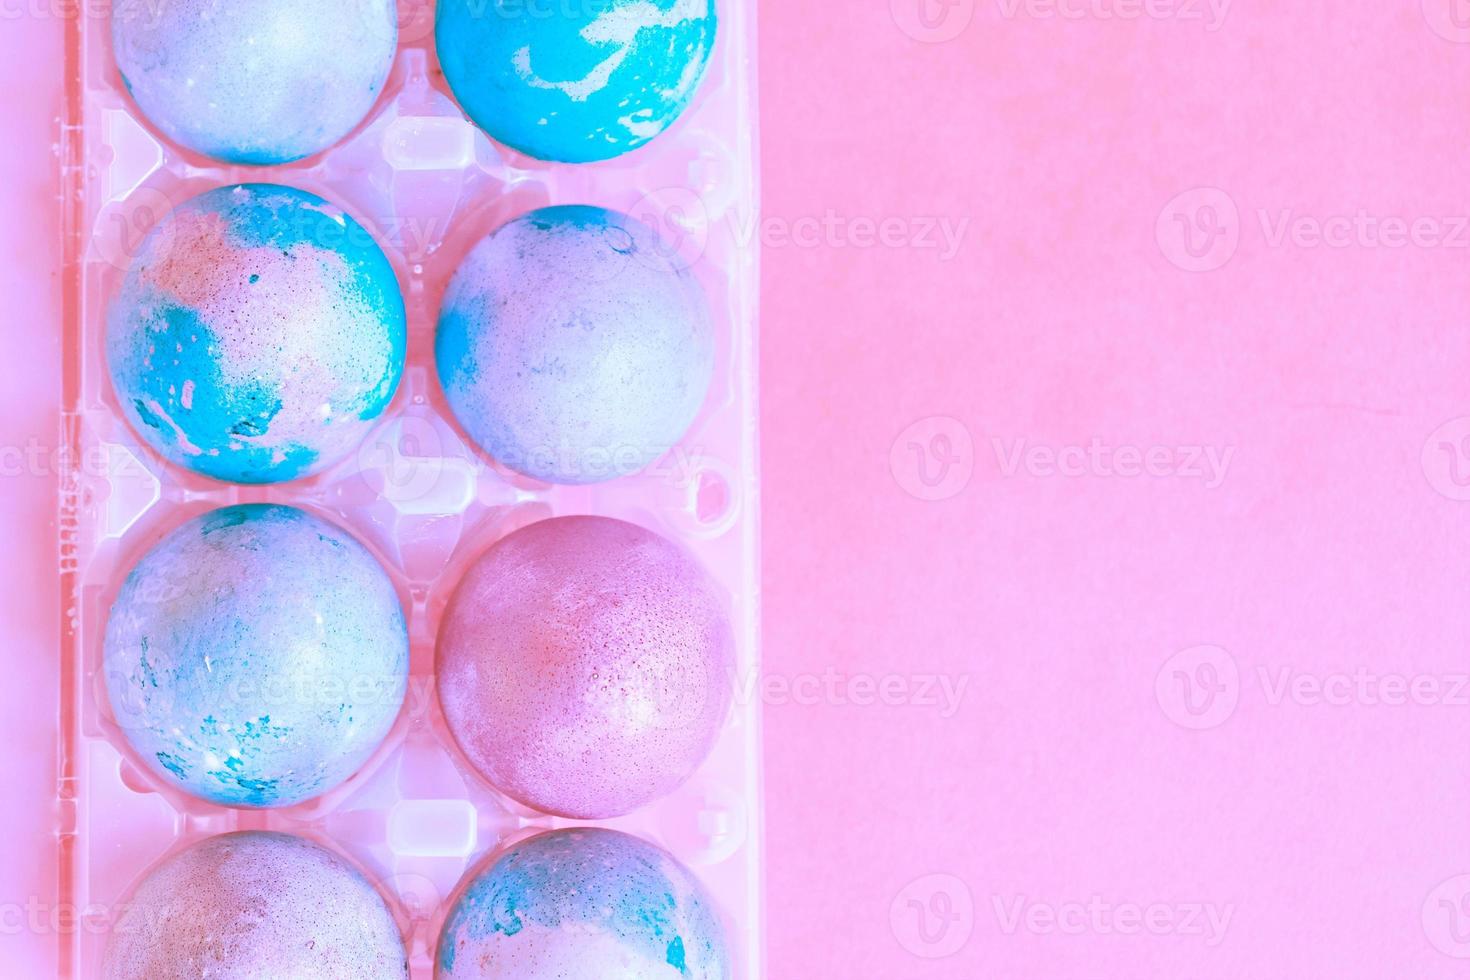 ovos de páscoa com padrão espacial intergaláctico foto